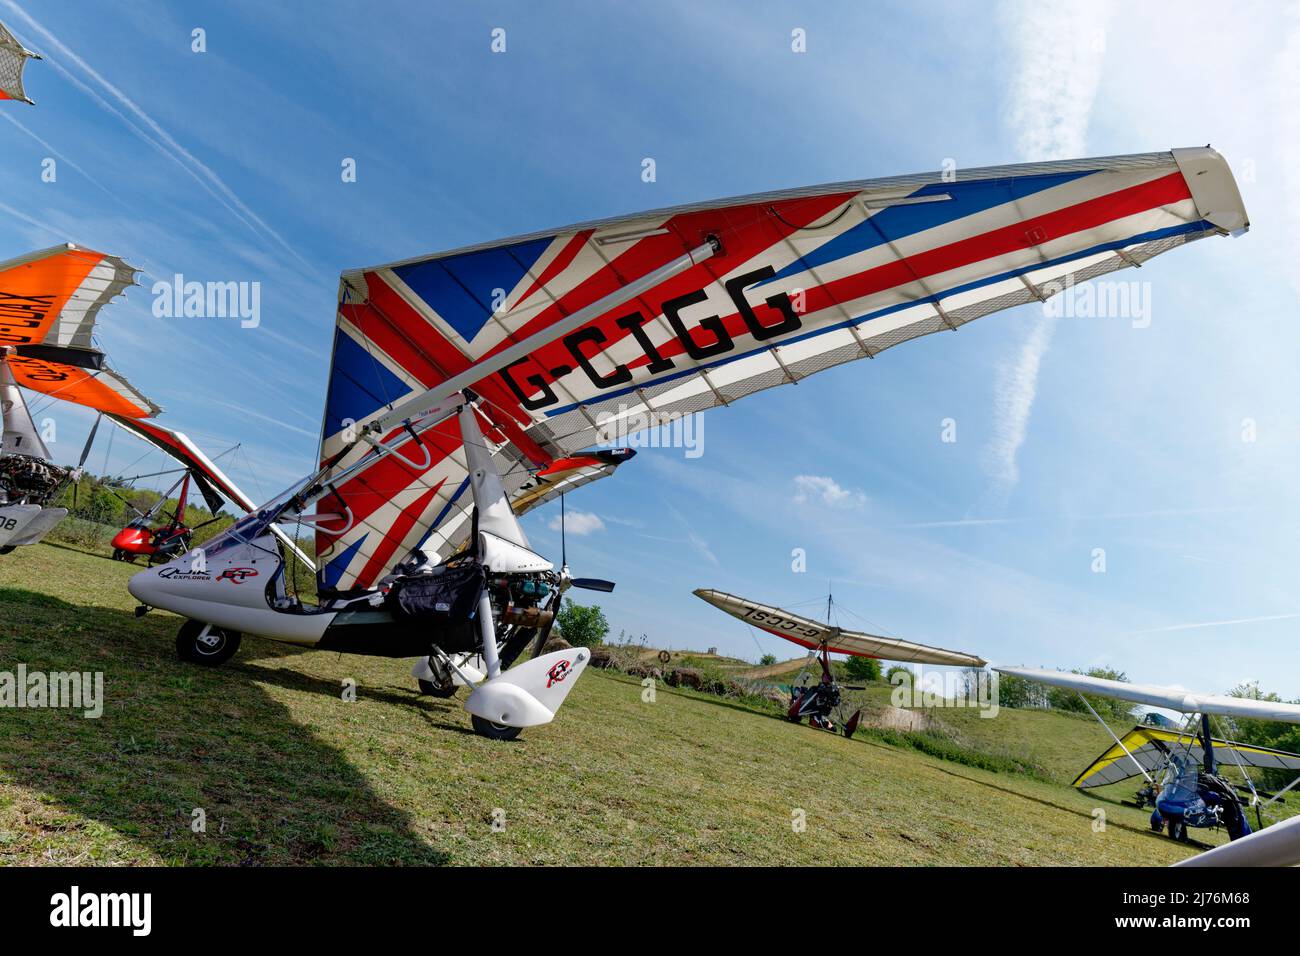 Auffälliges Design der britischen Union Jack-Flagge auf dem Flügel dieses P&M Aviation Quik GTR Flex Wing Microlight-Flugzeugs, das auf dem Flugplatz Popham geparkt ist Stockfoto